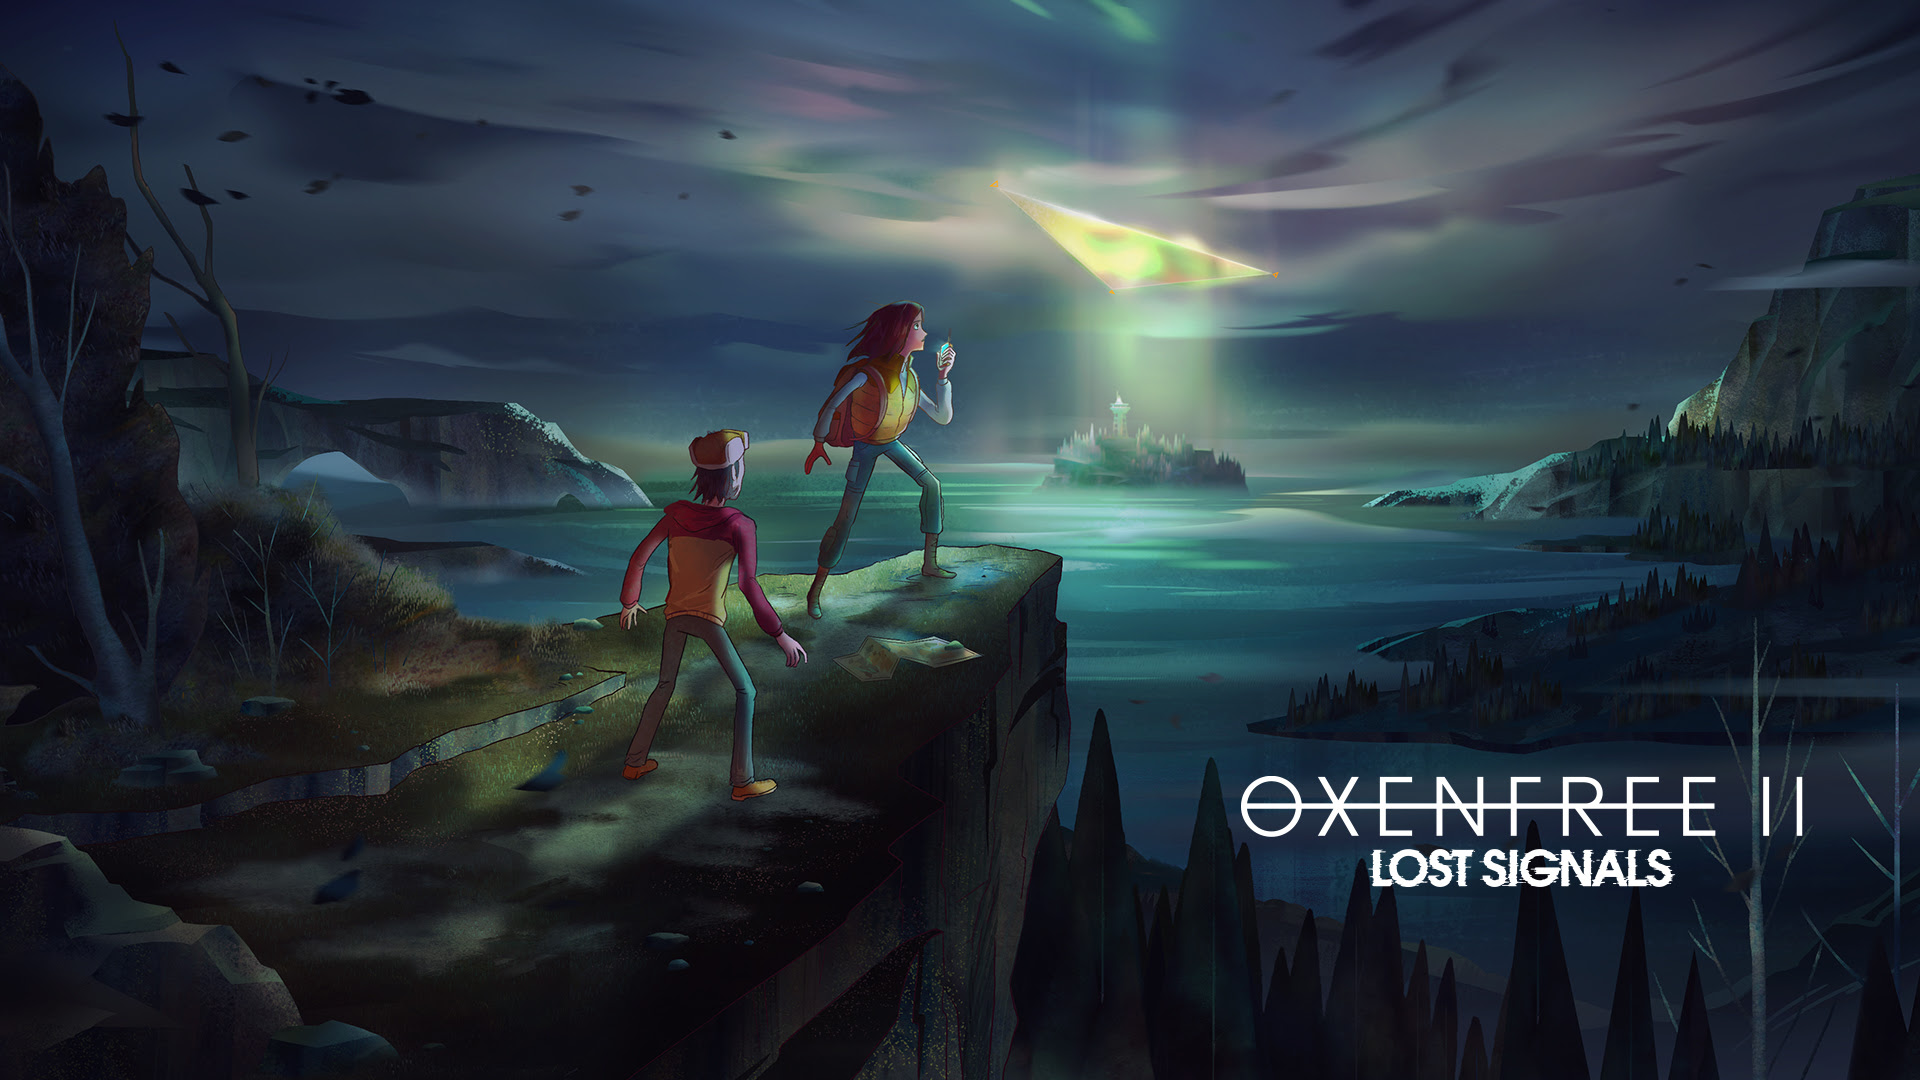 OXENFREE II: Lost Signals uscirà a luglio